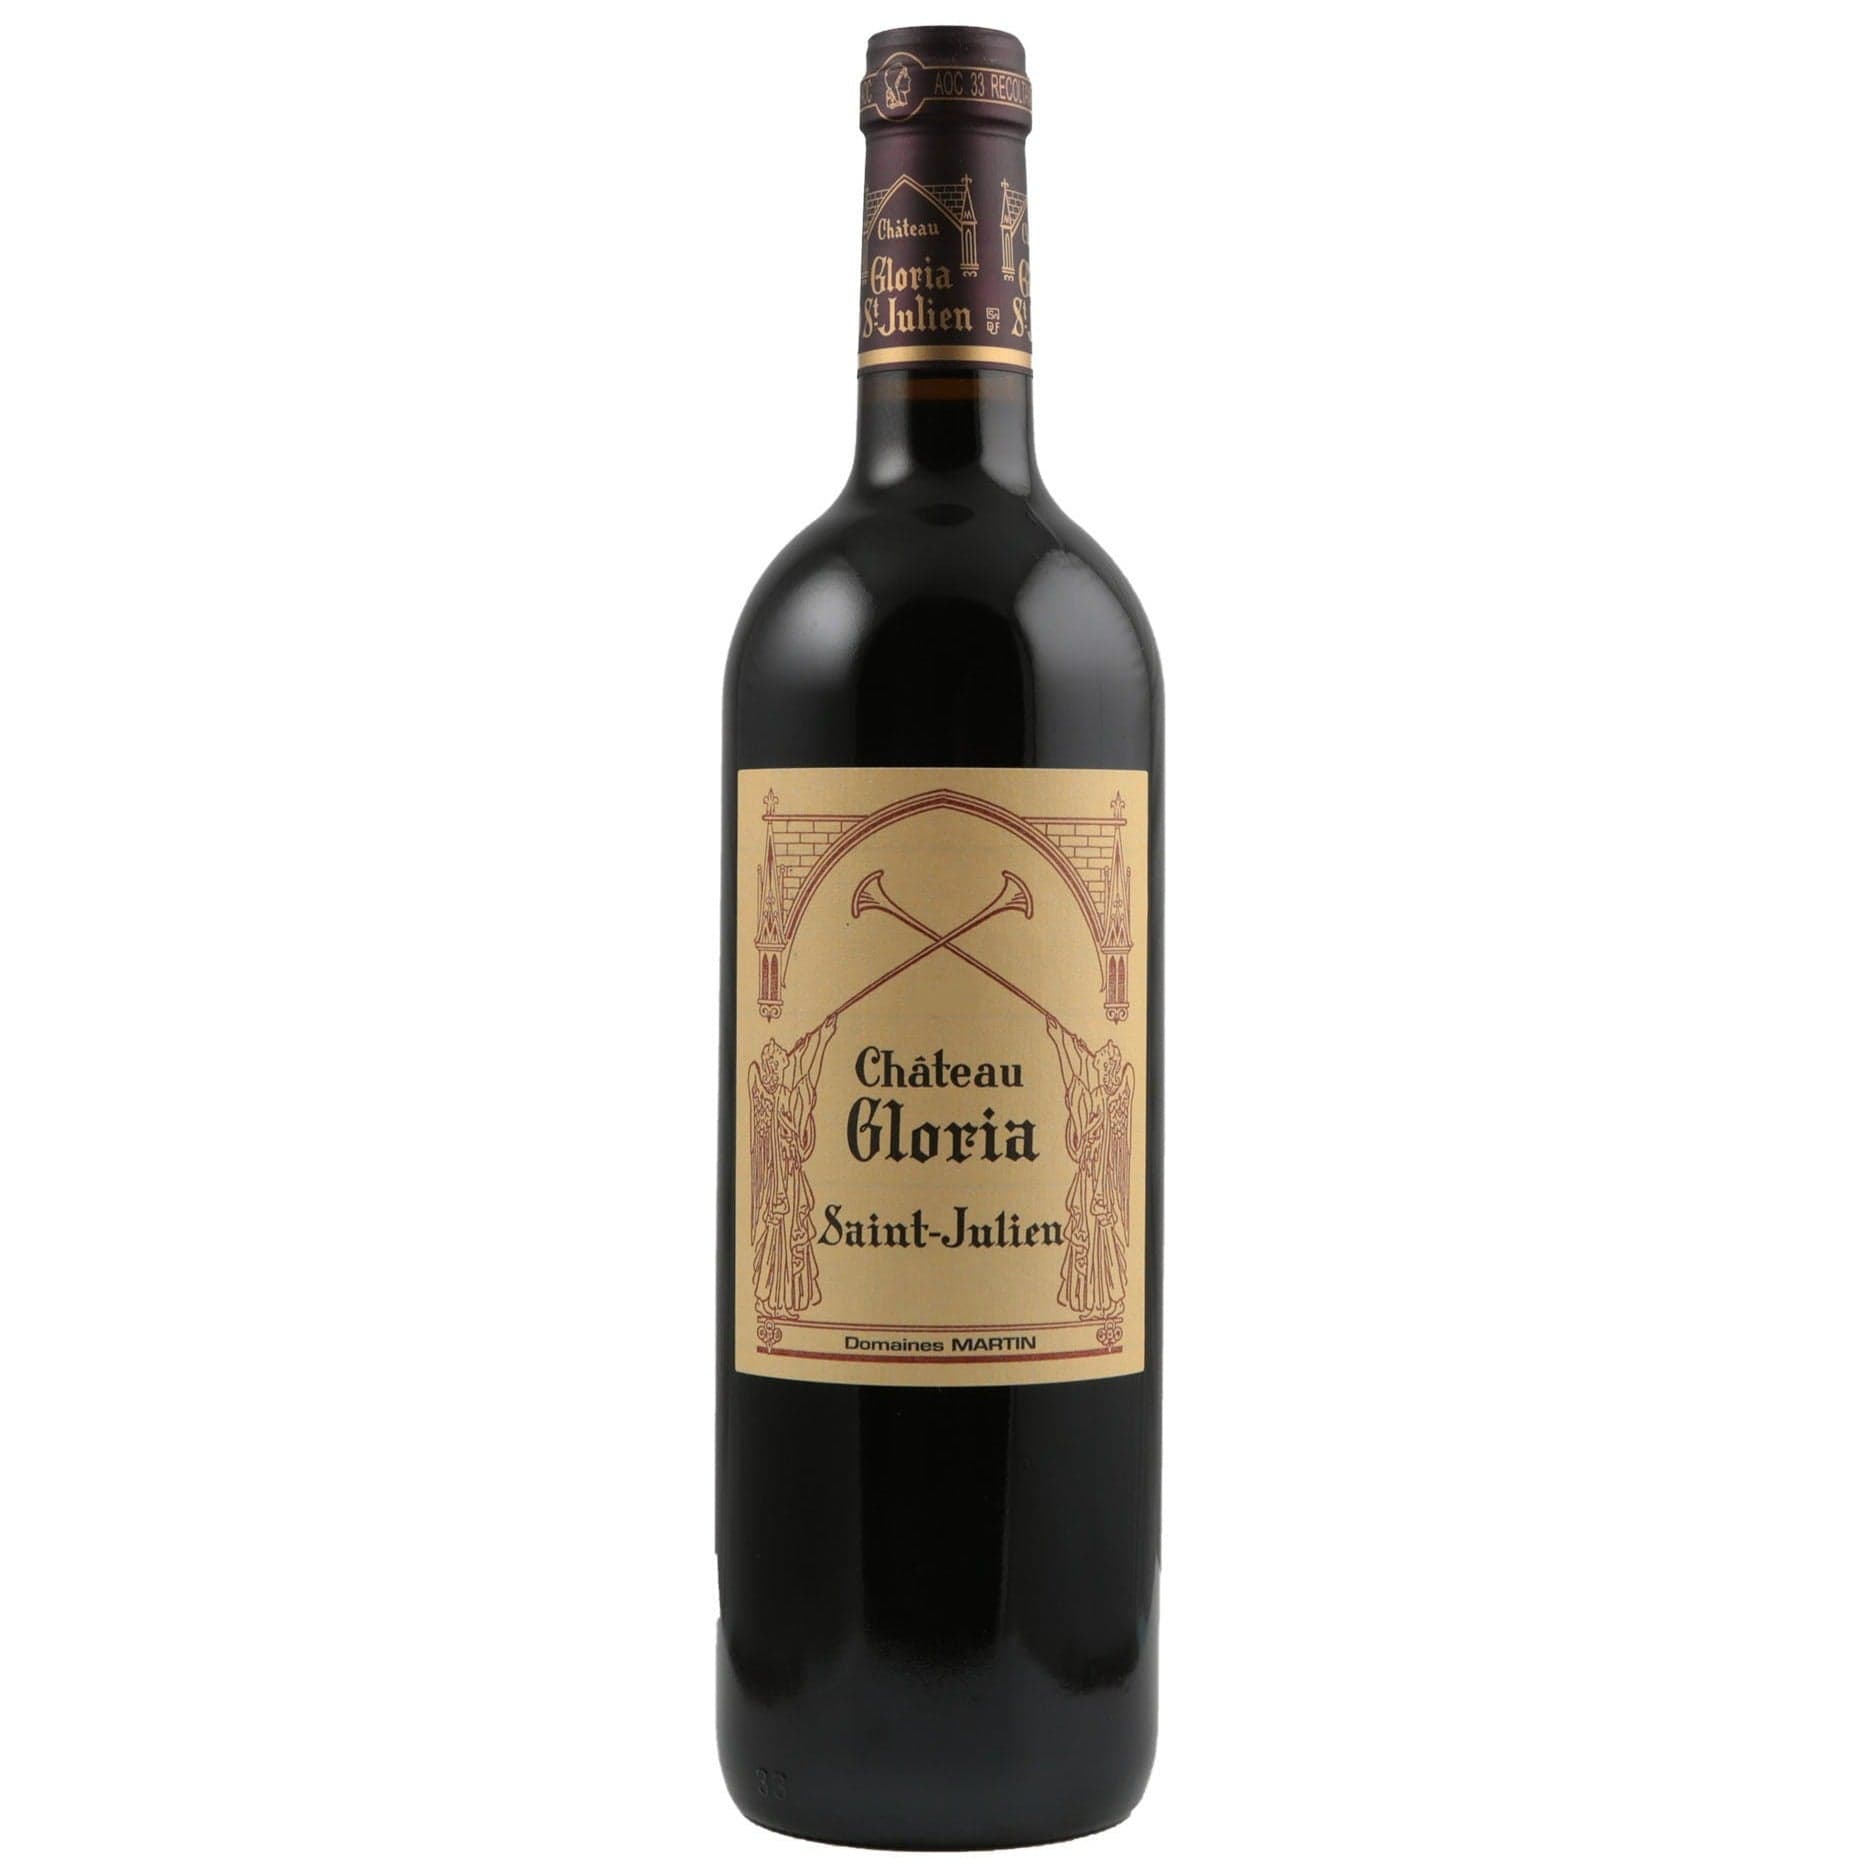 Single bottle of Red wine Ch. Gloria, Grand Vin, Saint-Julien, 2016 60% Cabernet Sauvignon, 30% Merlot, 7% Cabernet Franc & 3% Petit Verdot